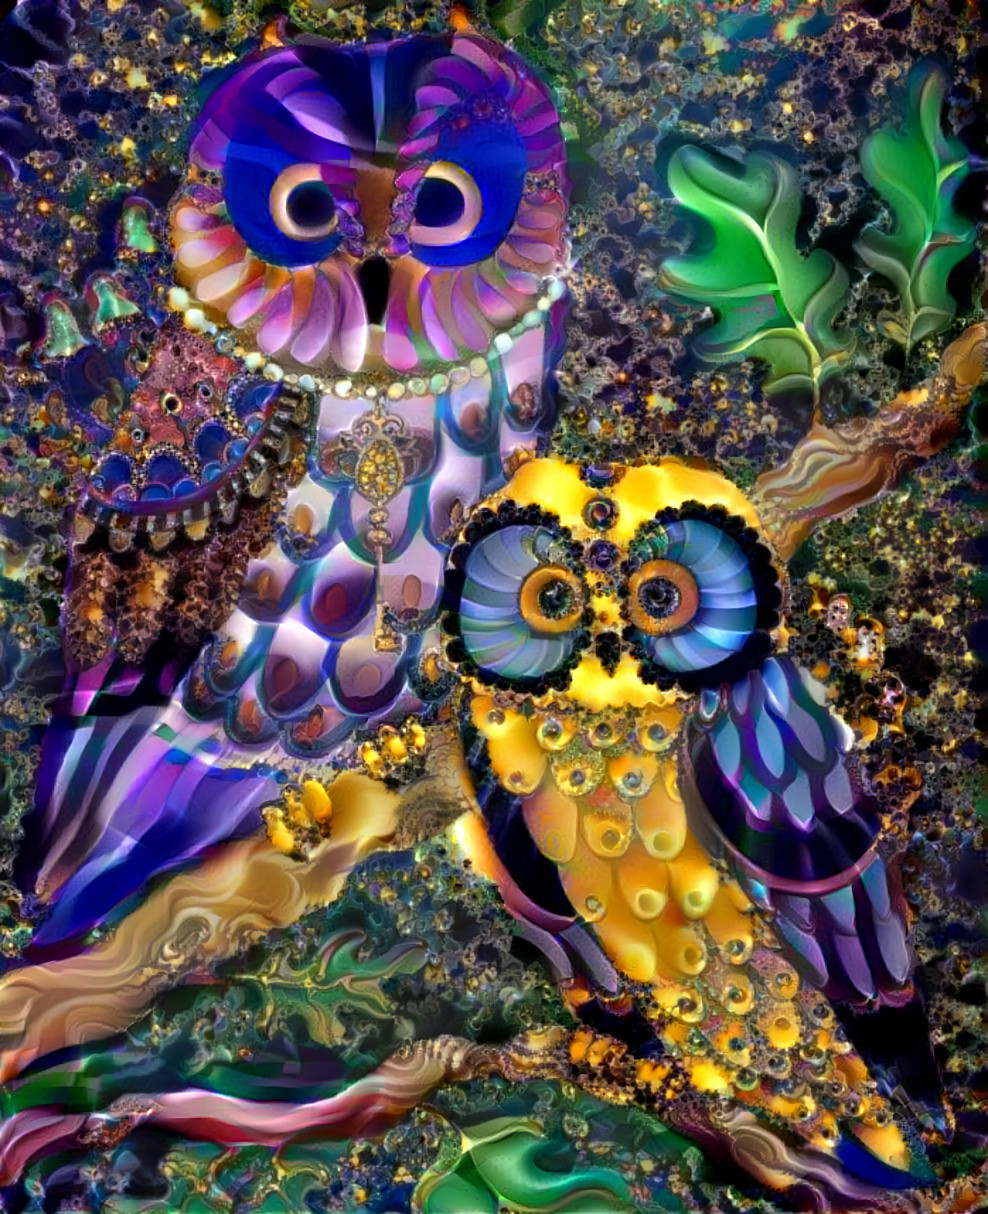 Dream owls